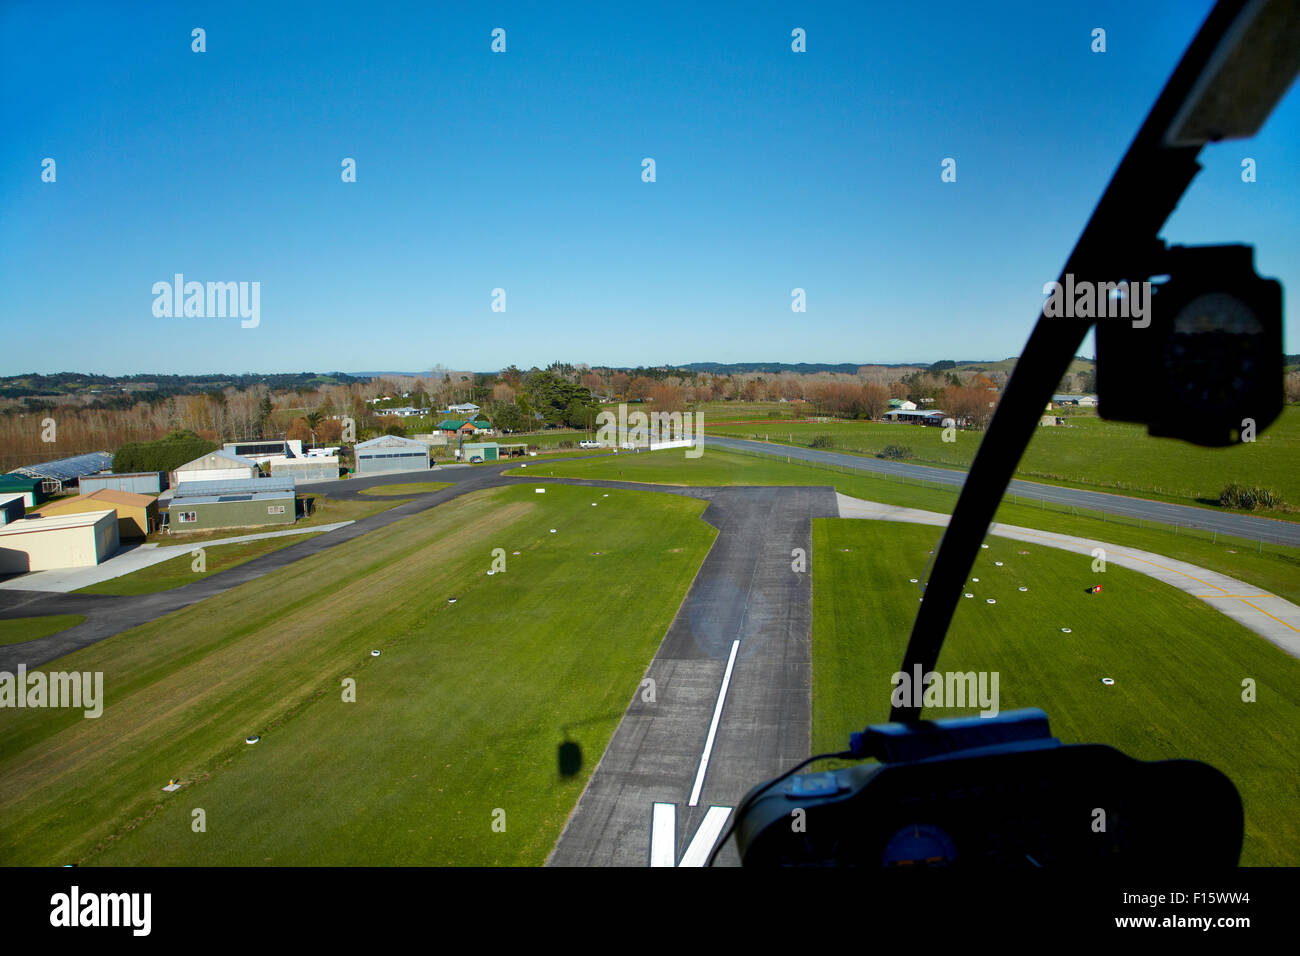 Pista del aeródromo de North Shore (aka lácteos aeródromo plana), visto desde el helicóptero Robinson R22, lácteos planas, Auckland, Nueva Zelanda Foto de stock